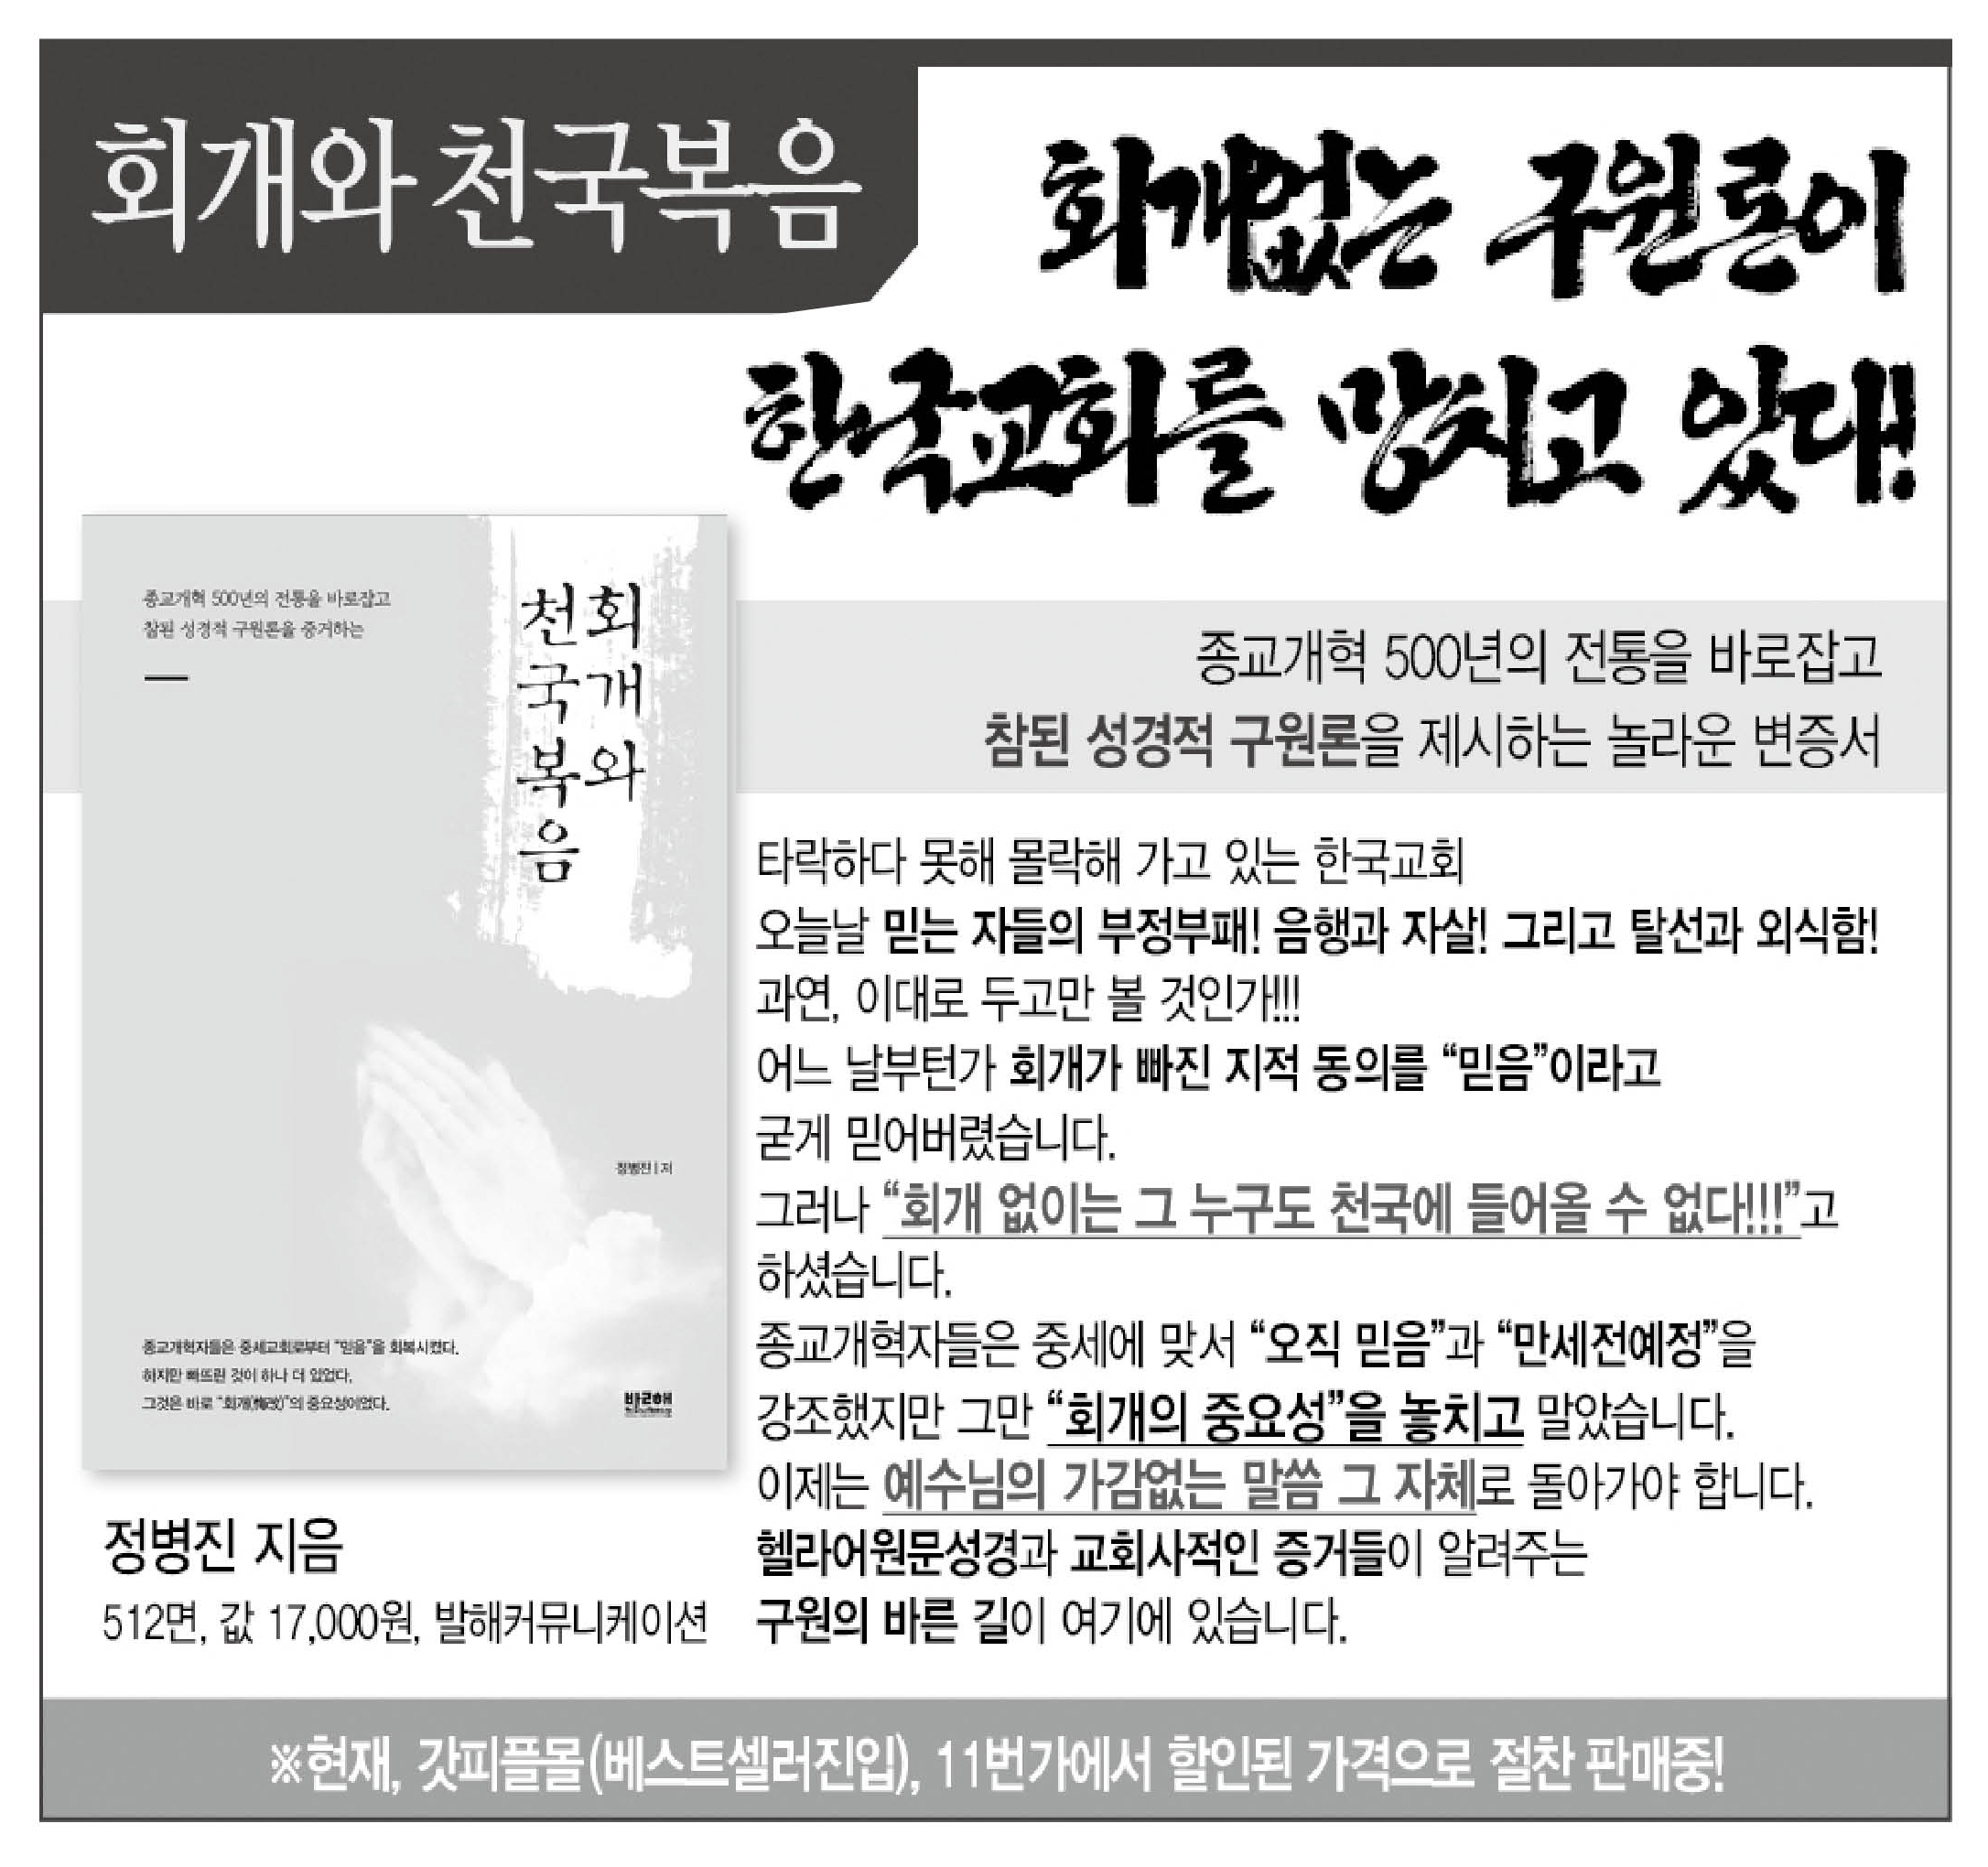 2018-02-20 기독신문사(흑백_기사부분만).jpg